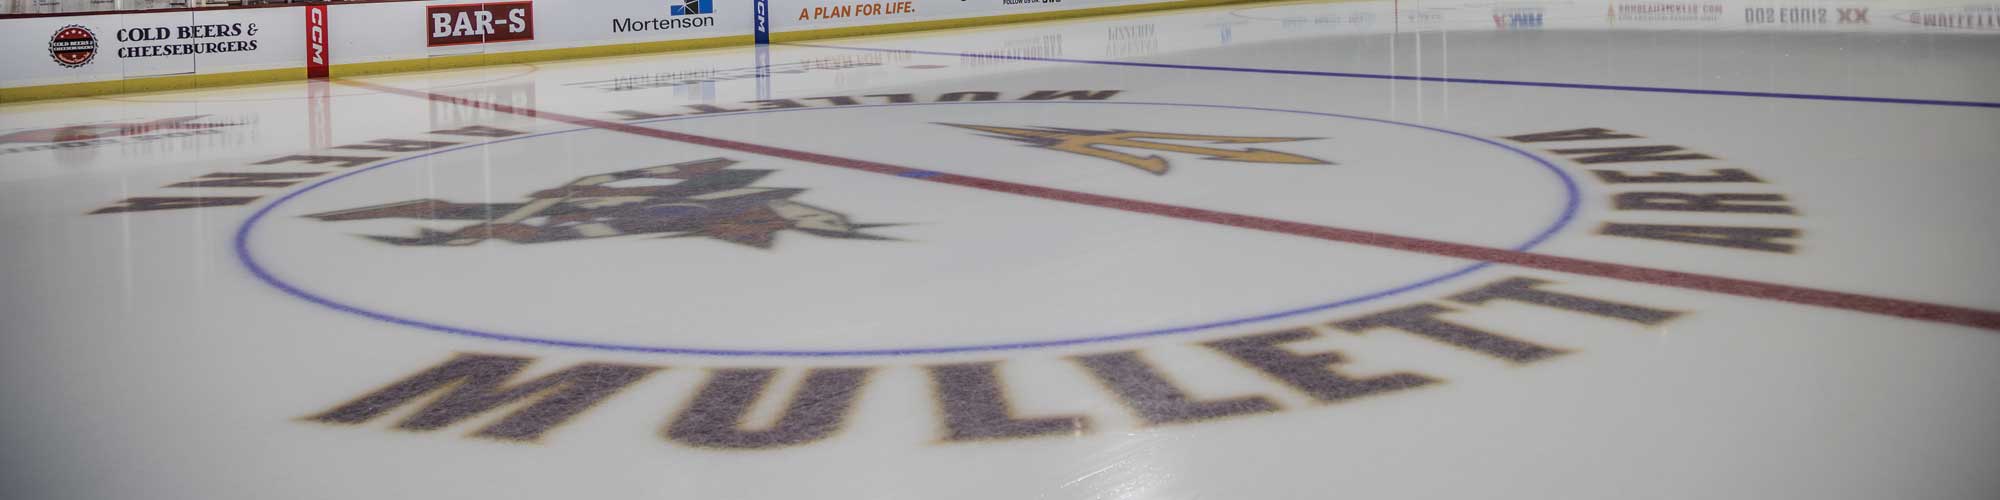 Mullett Arena - Arizona State University Ice Hockey Arena